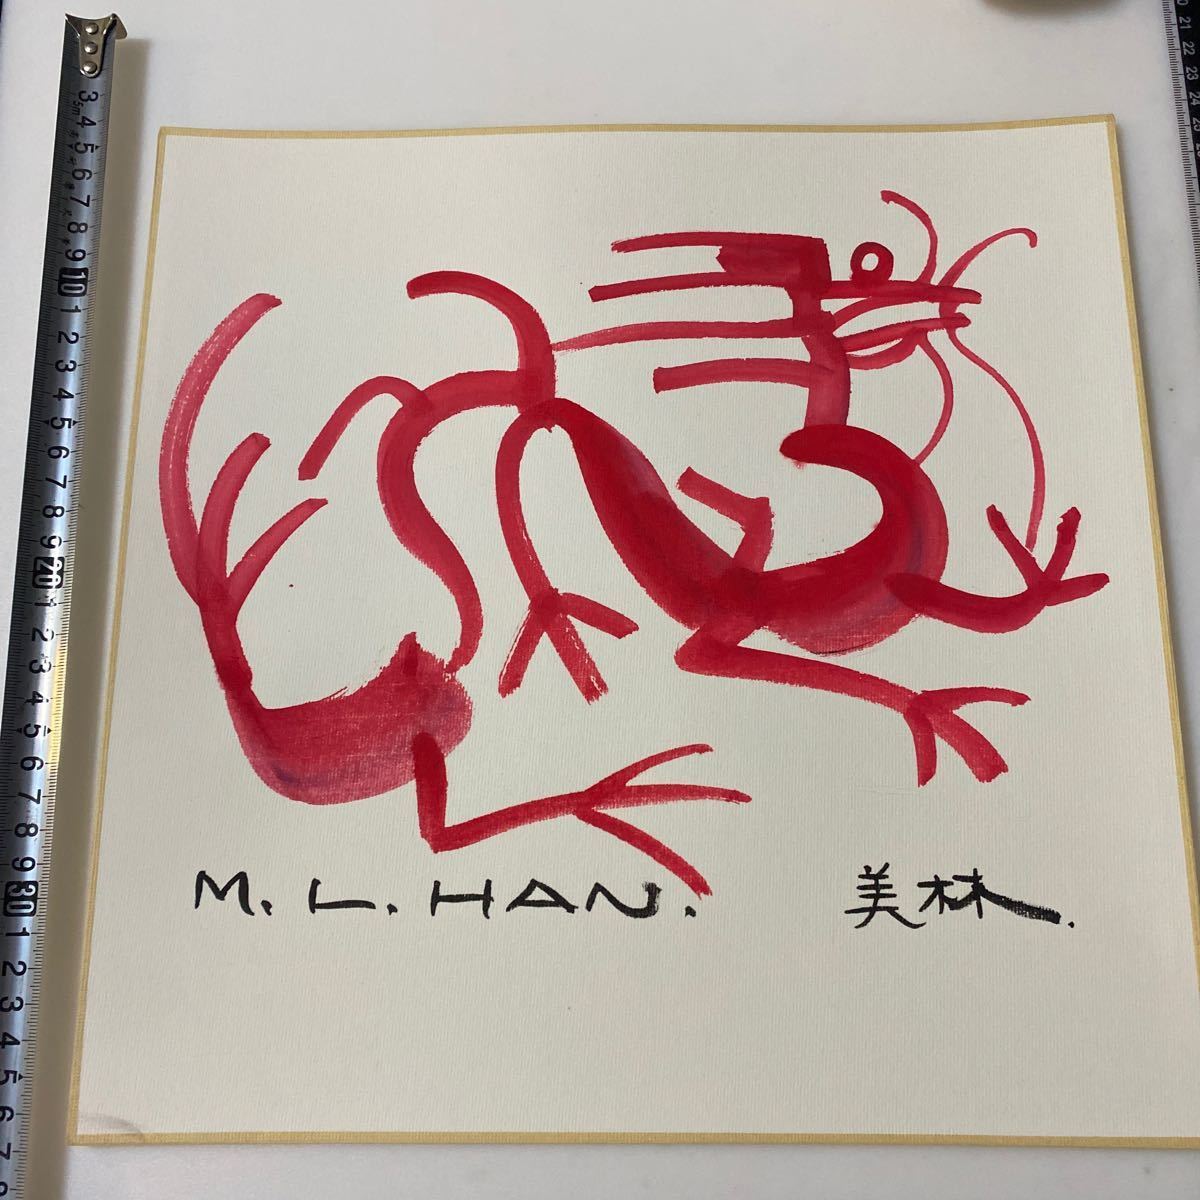 चीनी मास्टर सुलेख और चित्रकला कलाकार हान मीलिन, बीजिंग ओलंपिक फ़ुयान 2024 राशि चिन्हों के डिजाइनर जियाओजिन/ड्रैगन《ड्रैगन/हान मीलिन चिन्ह》33x33 सेमी प्रामाणिक लिखावट गारंटी प्रबंधन संख्या: 468, कलाकृति, चित्रकारी, स्याही पेंटिंग